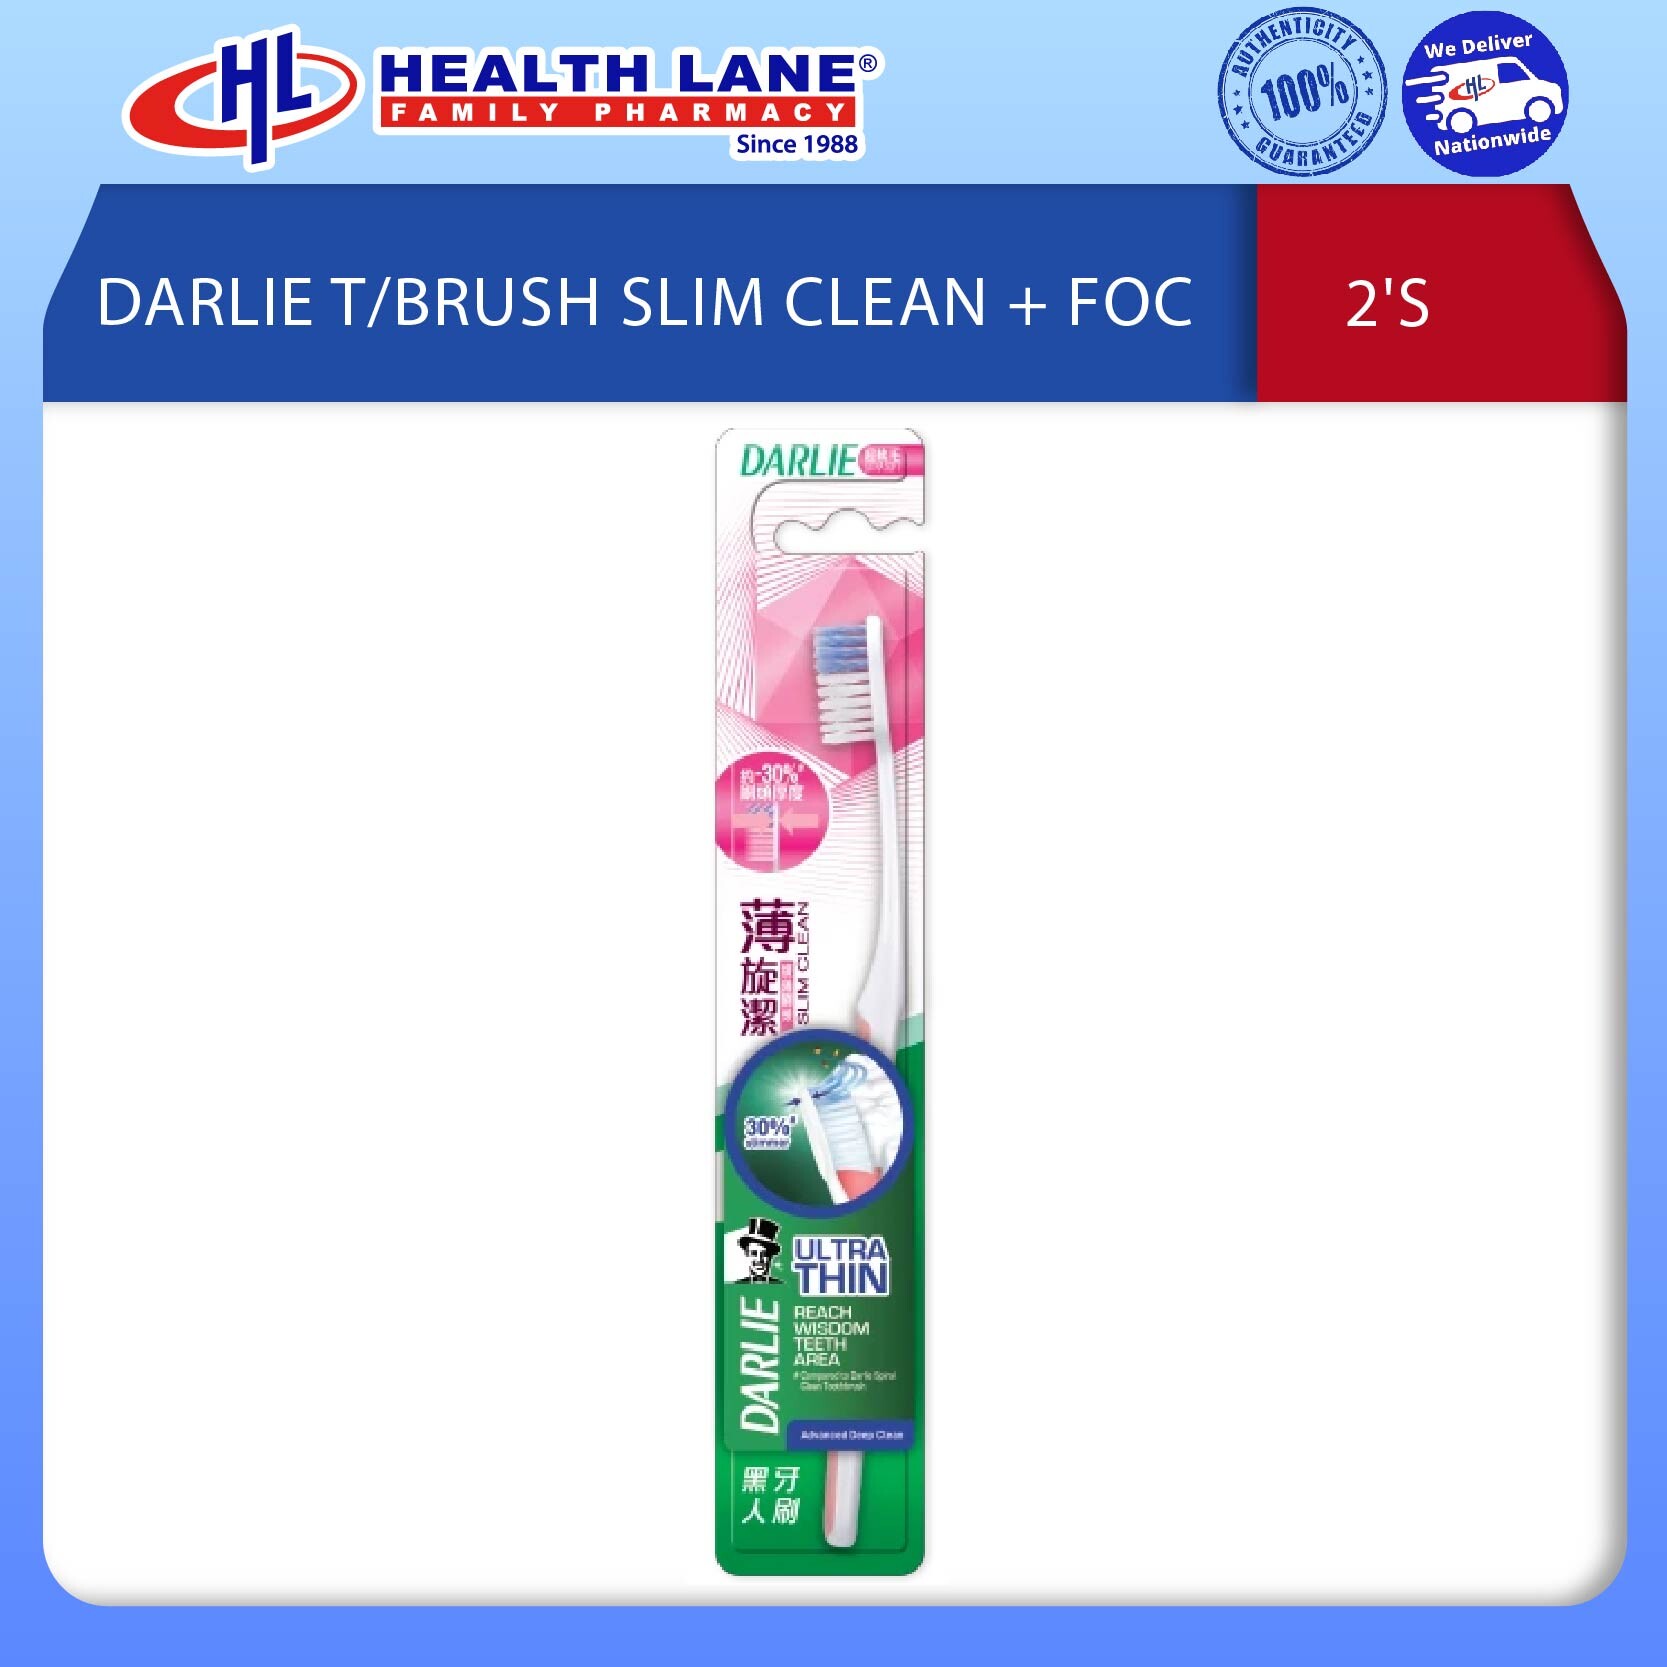 DARLIE T/BRUSH SLIM CLEAN 2'S + FOC